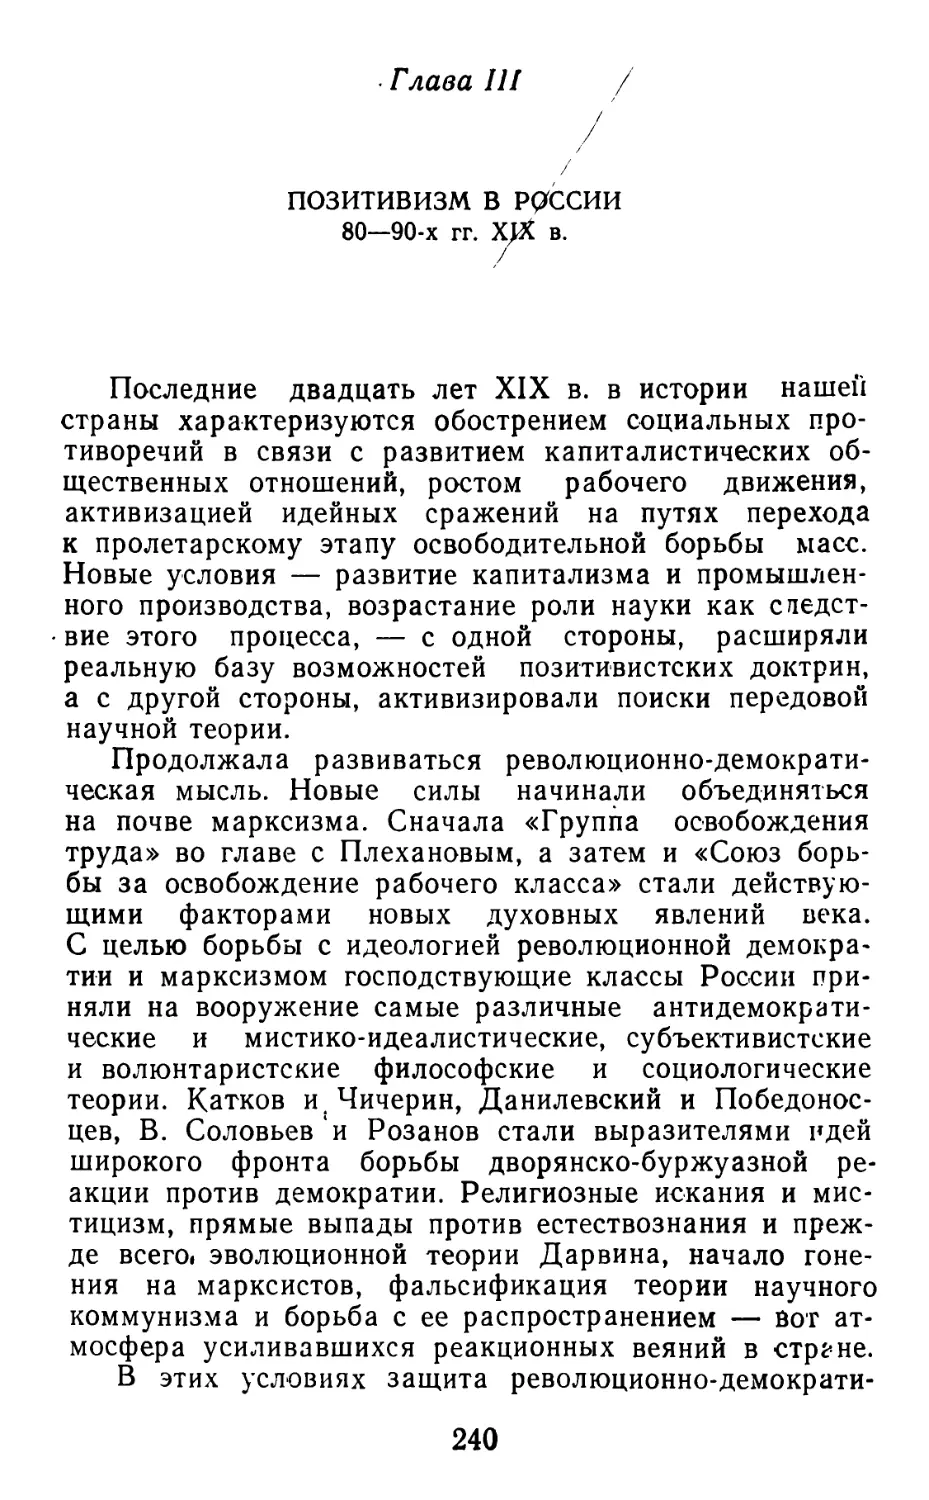 Глава III. ПОЗИТИВИЗМ В РОССИИ 80-90-х гг. XIX в.